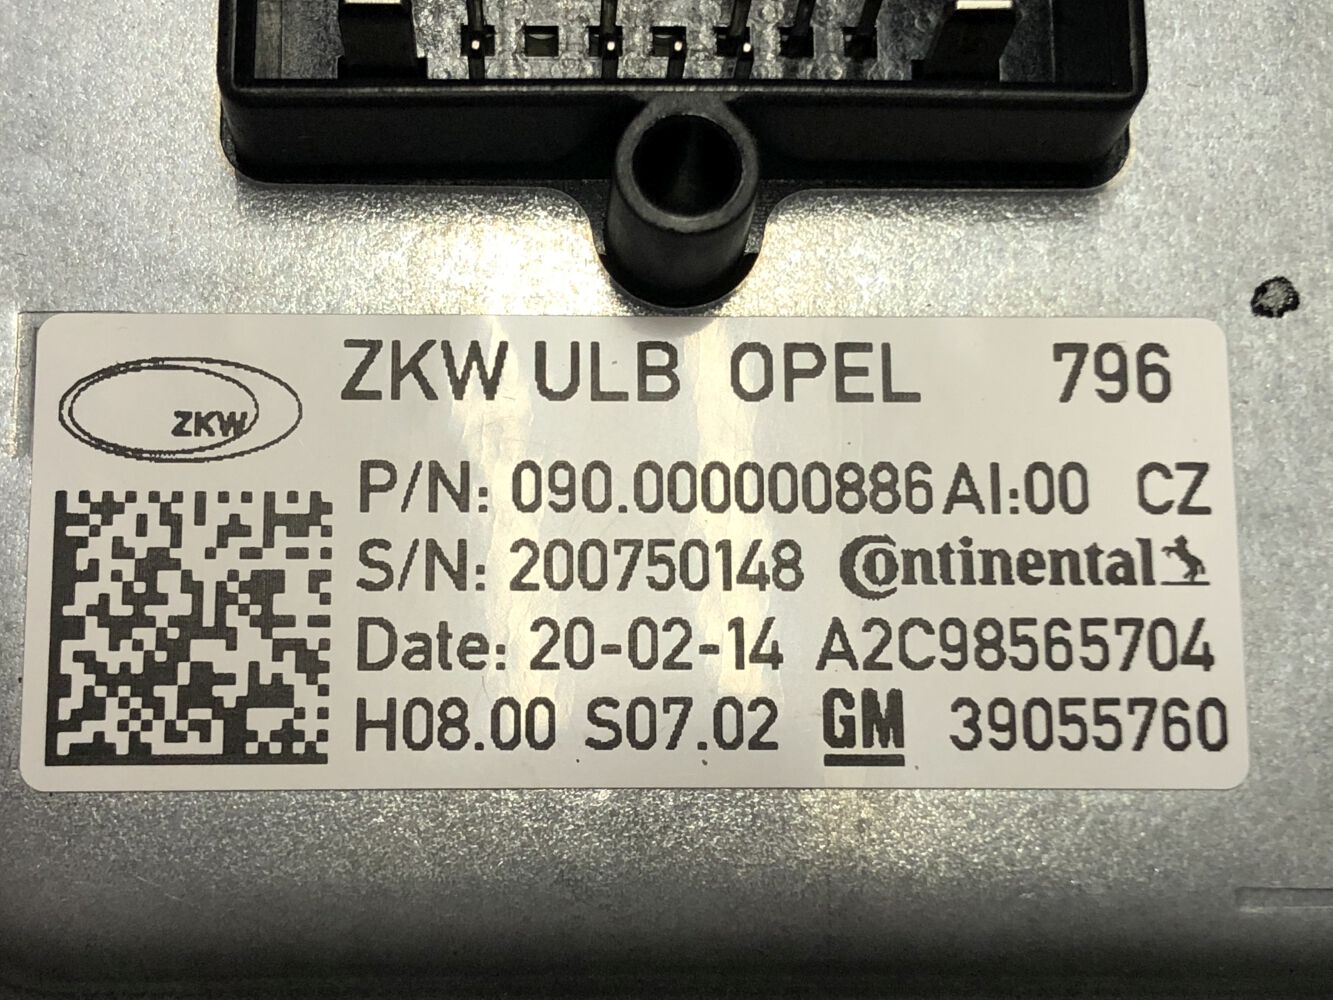 LED-Scheinwerfer von ZKW im neuen Opel Insignia